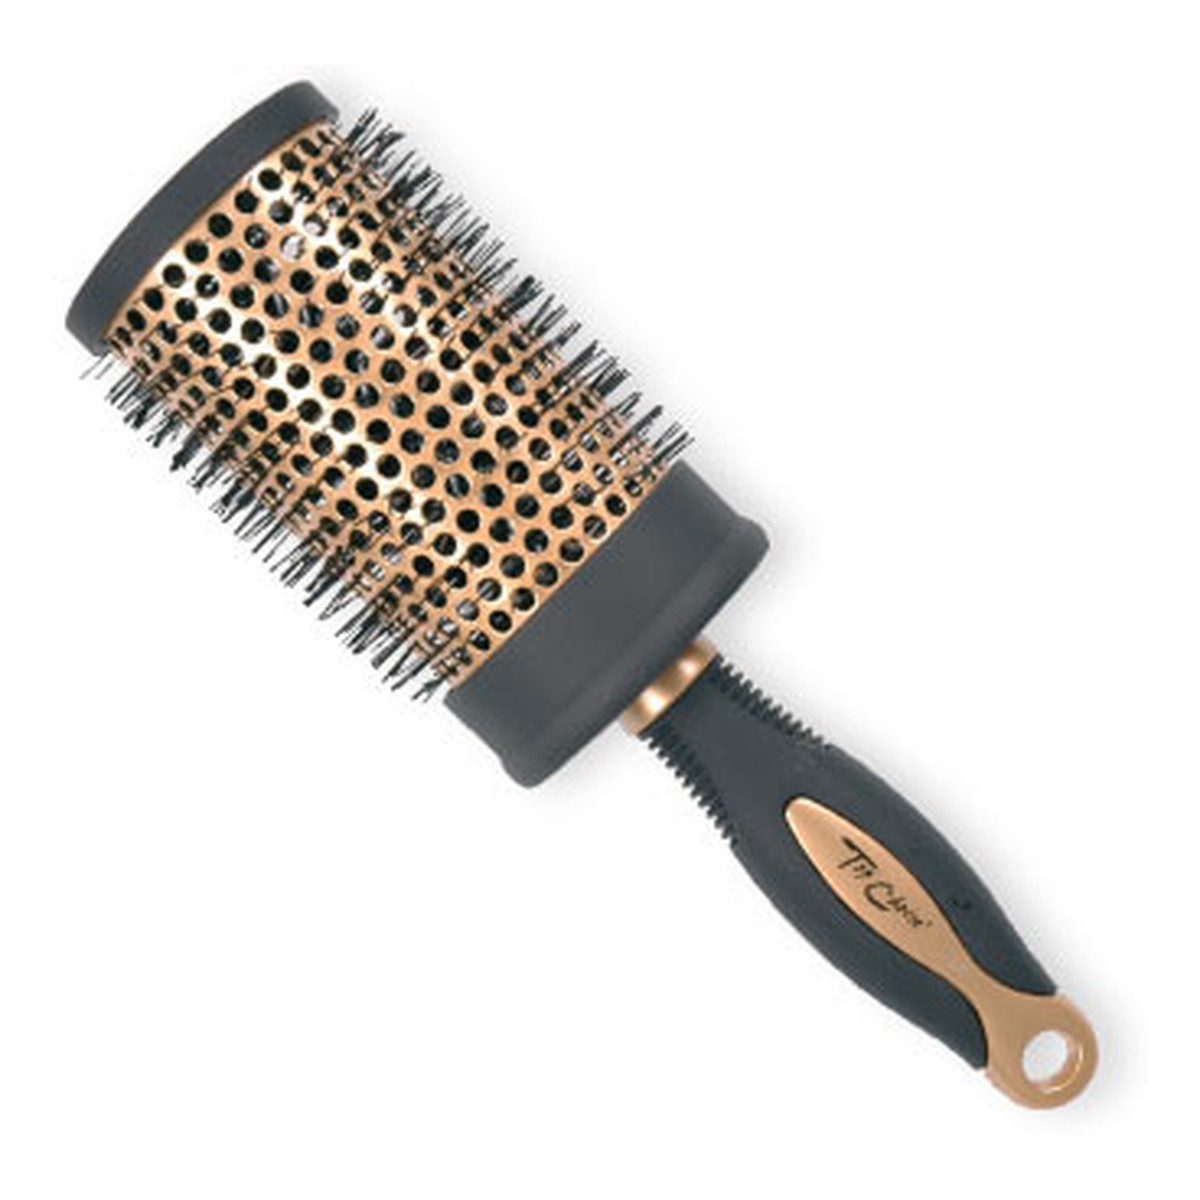 Top Choice Exclusive Hair Brush Szczotka do włosów Black / Gold